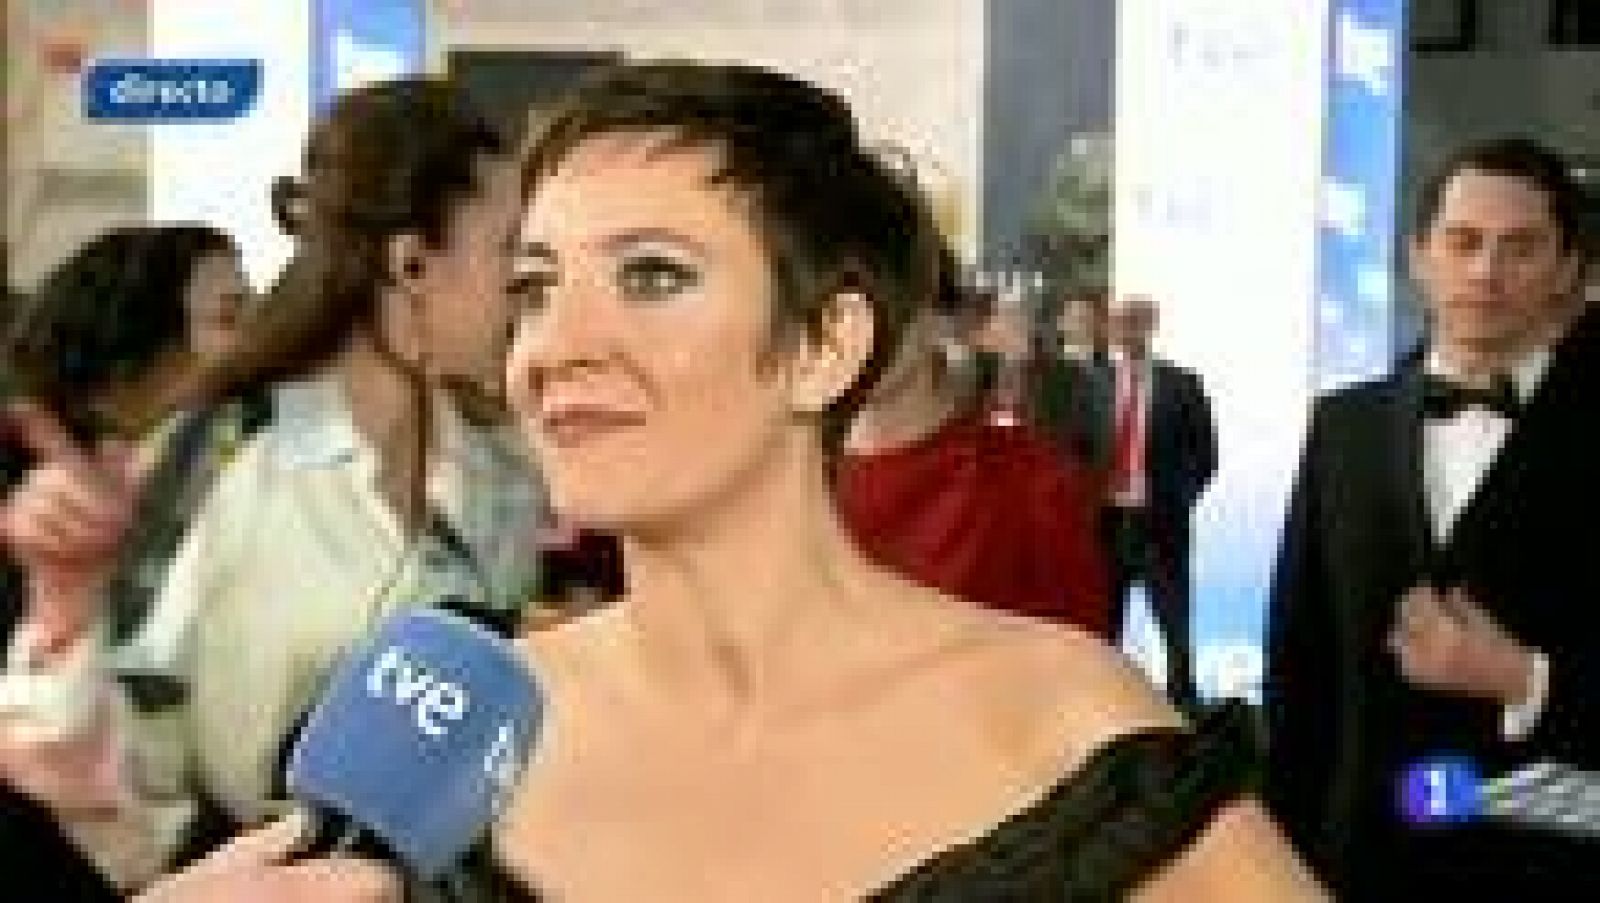 Premios Goya 2012 - Eva Hache: "Estoy preparada para que me maten; preparada para todo"